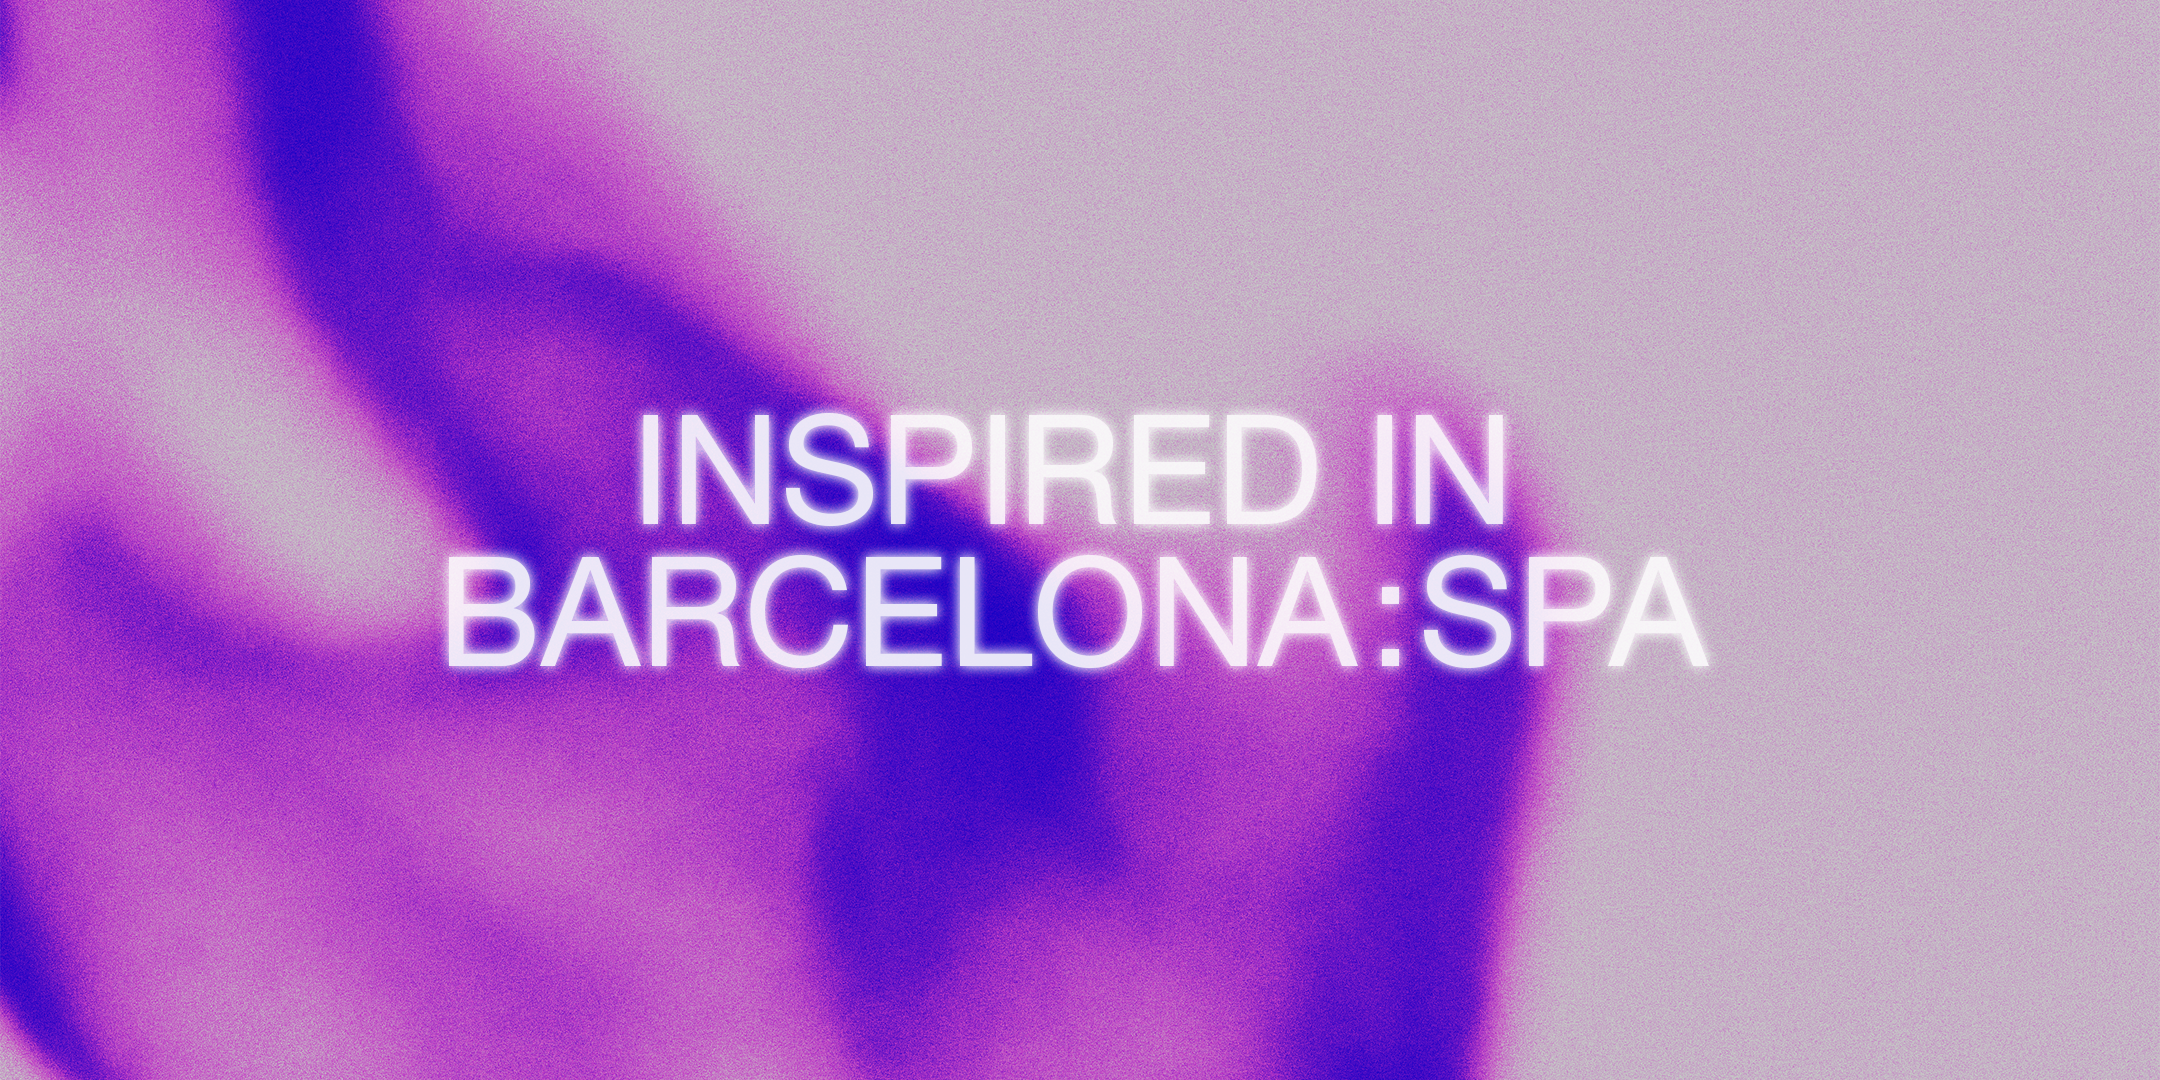 Inspired in Barcelona: Spa | Barcelona centro de Diseño